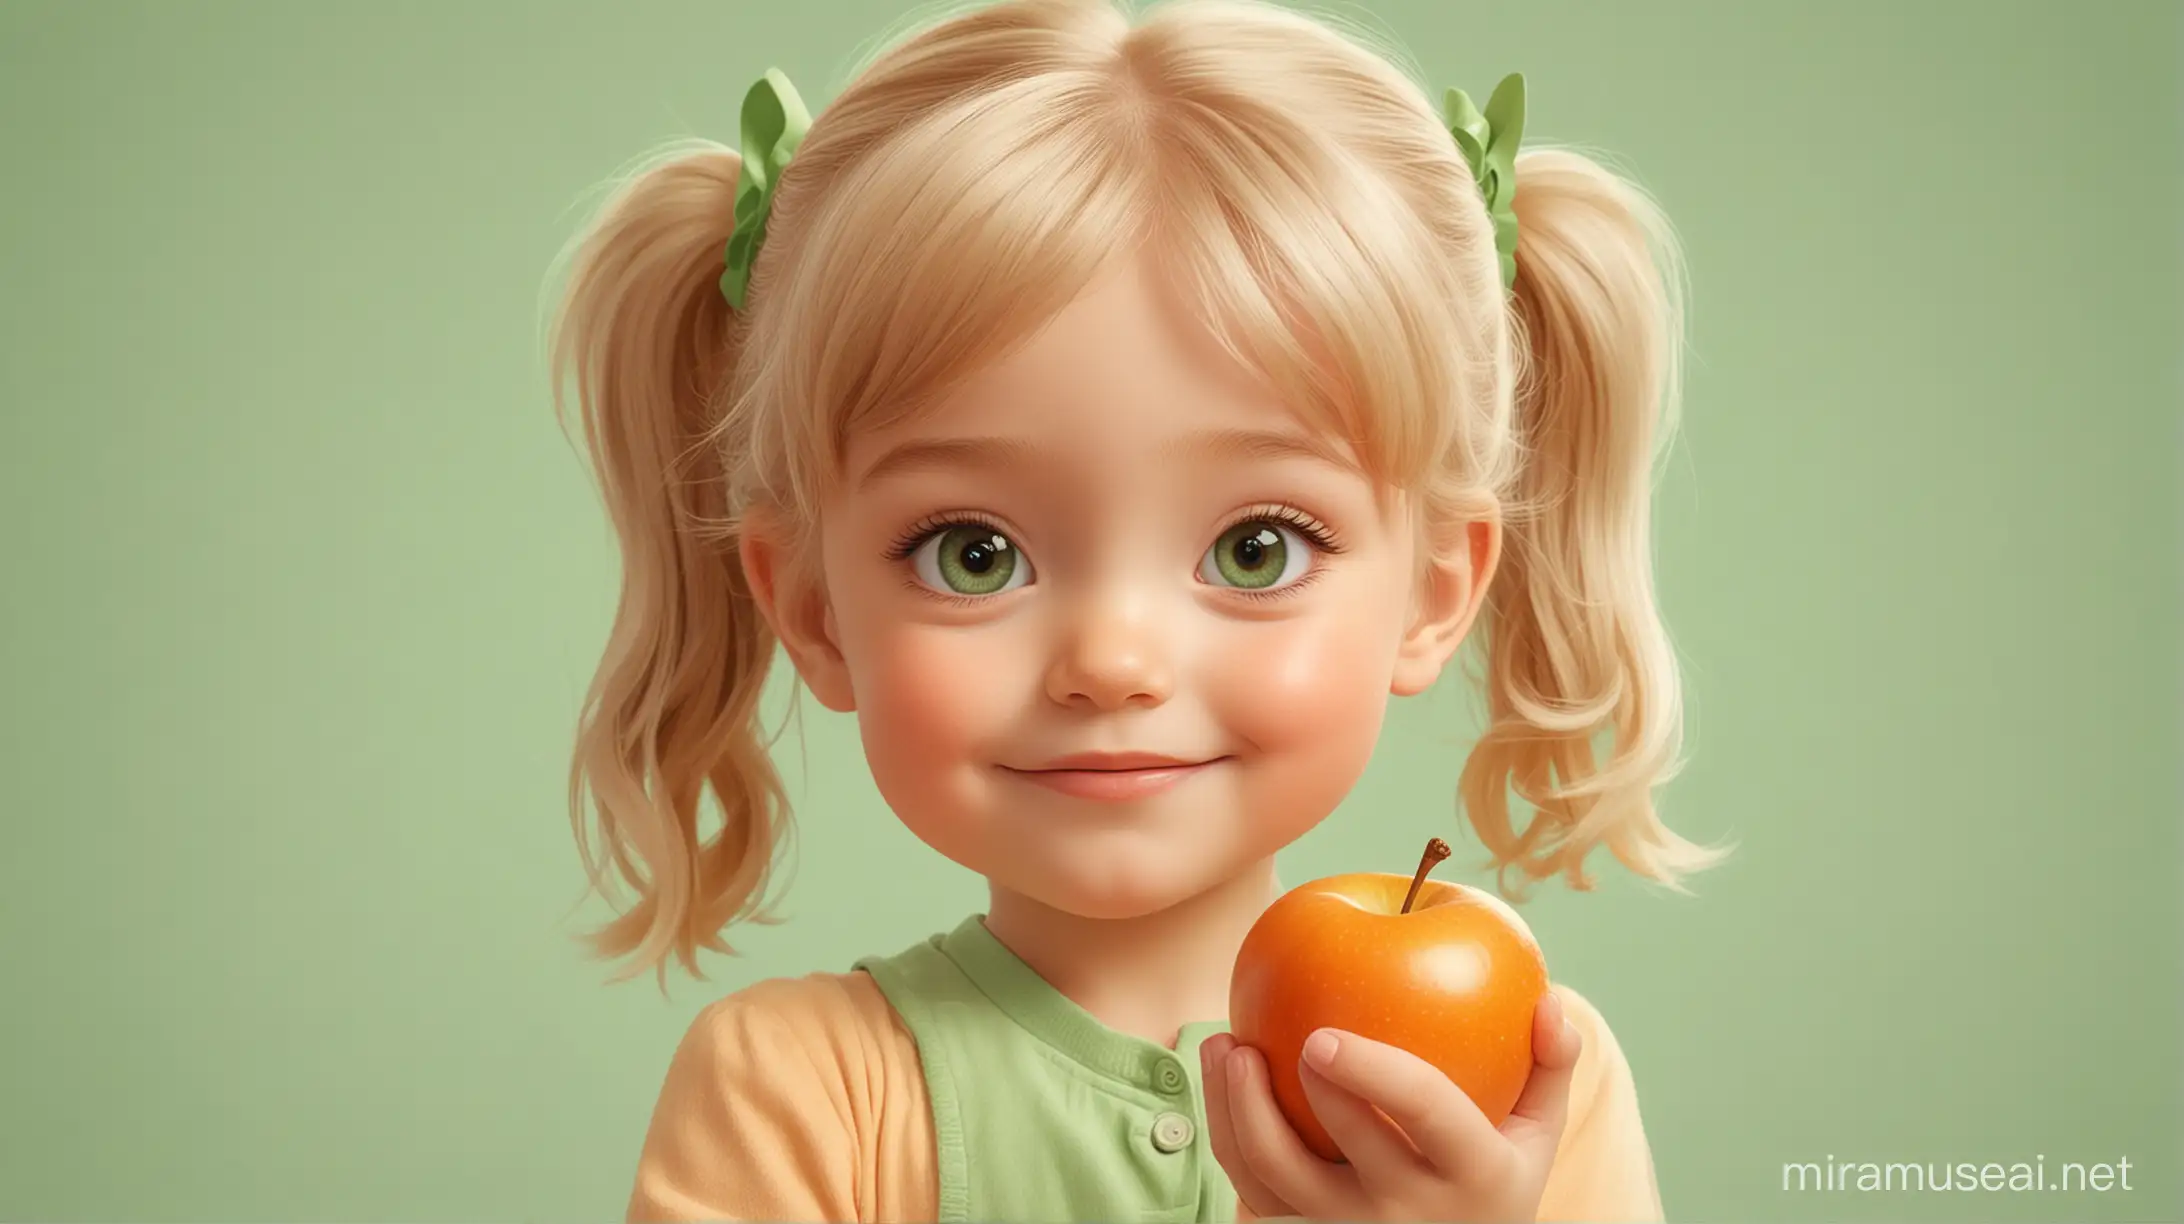 Ребёнок с яблоком. Мультипликационный стиль Disney. Пастельные оттенки. Сплошная заливка фона. Оранжевый, белый, зелёный.